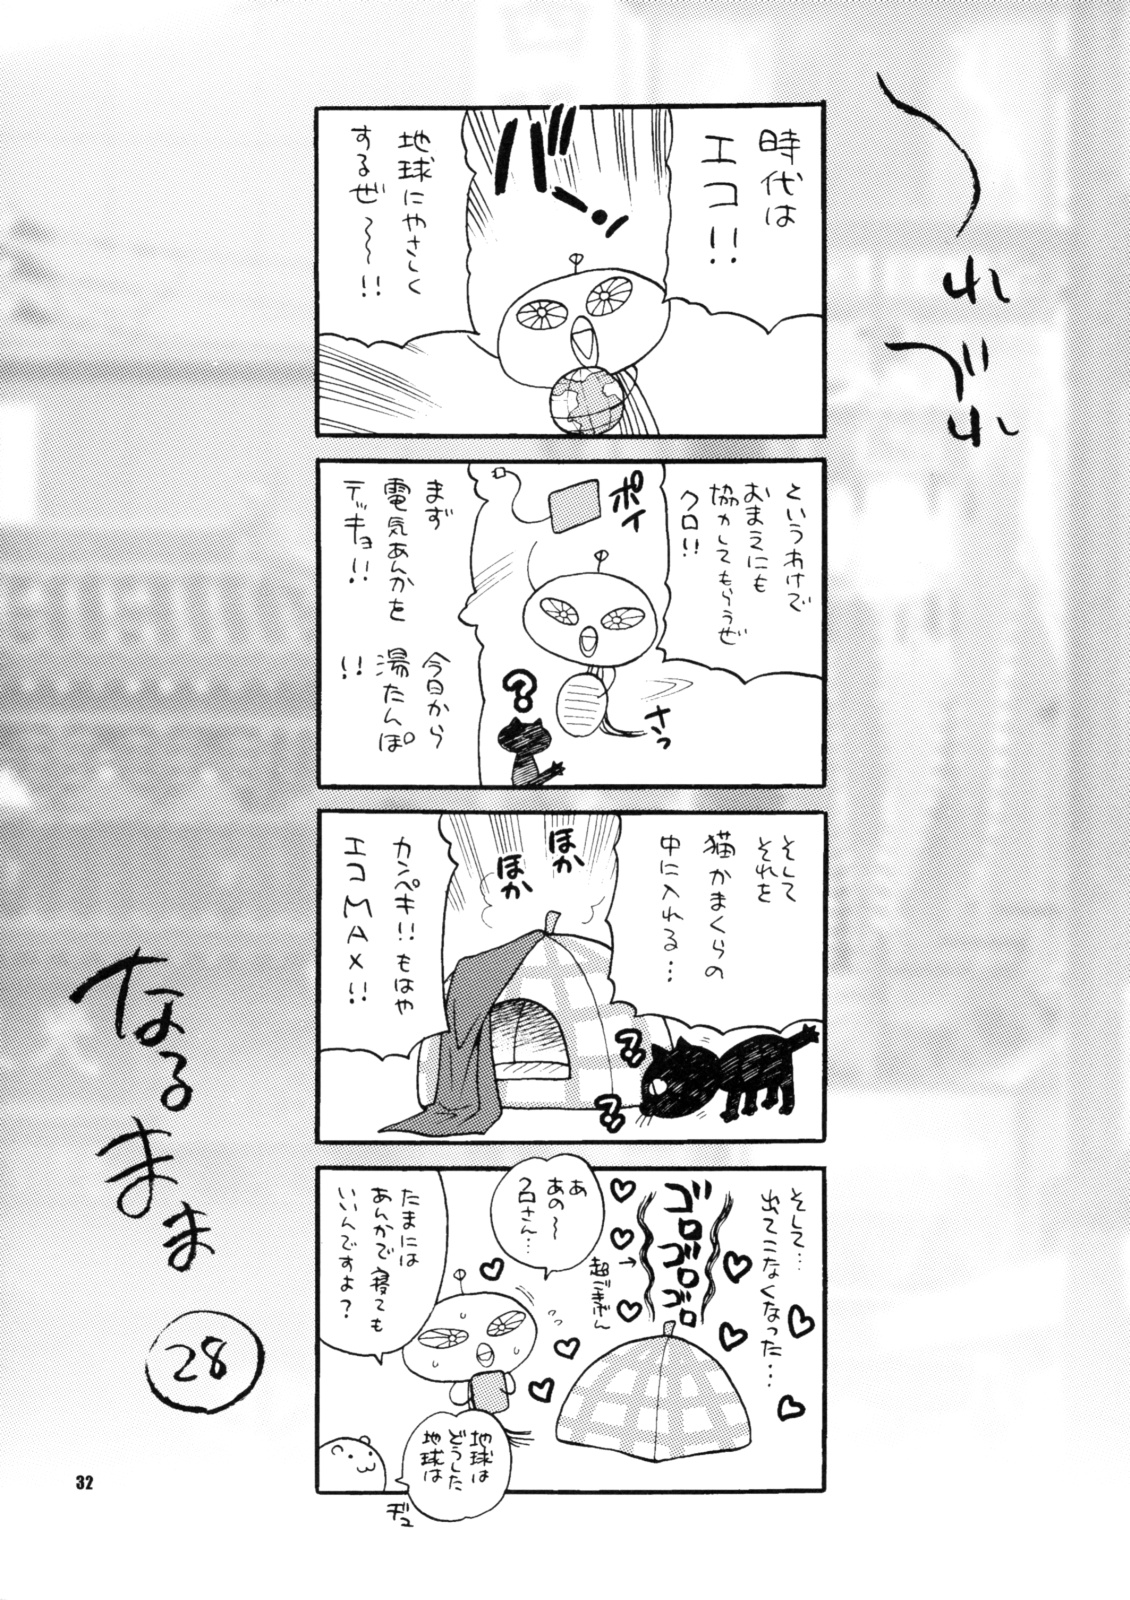 Yukiyanagi no Hon 18 Chun-Li Keiji no Oppai Sousa numero d'image 28